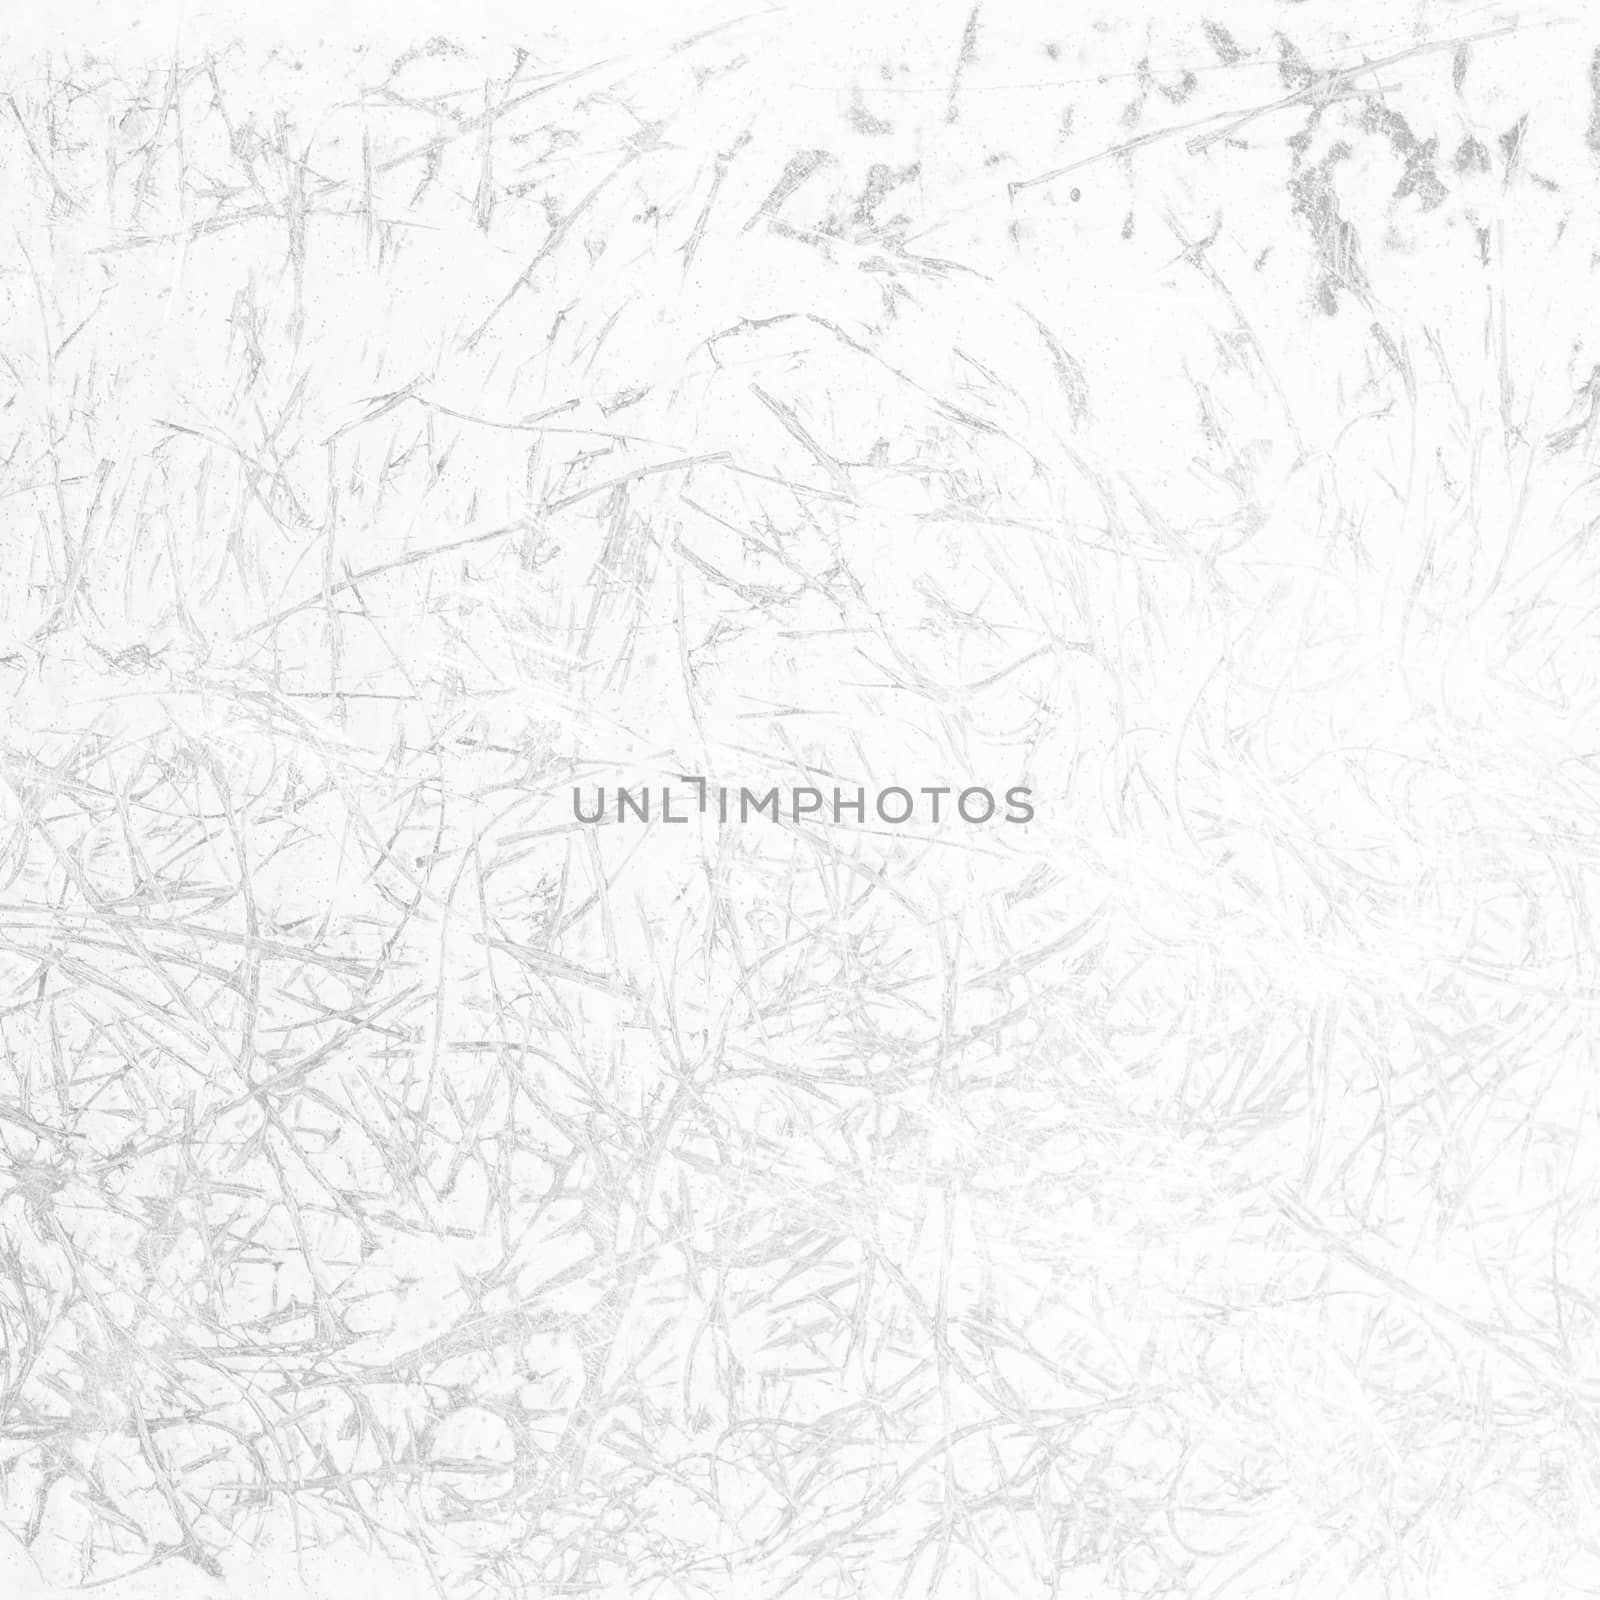 White background of Scratch Grunge Urban Texture.